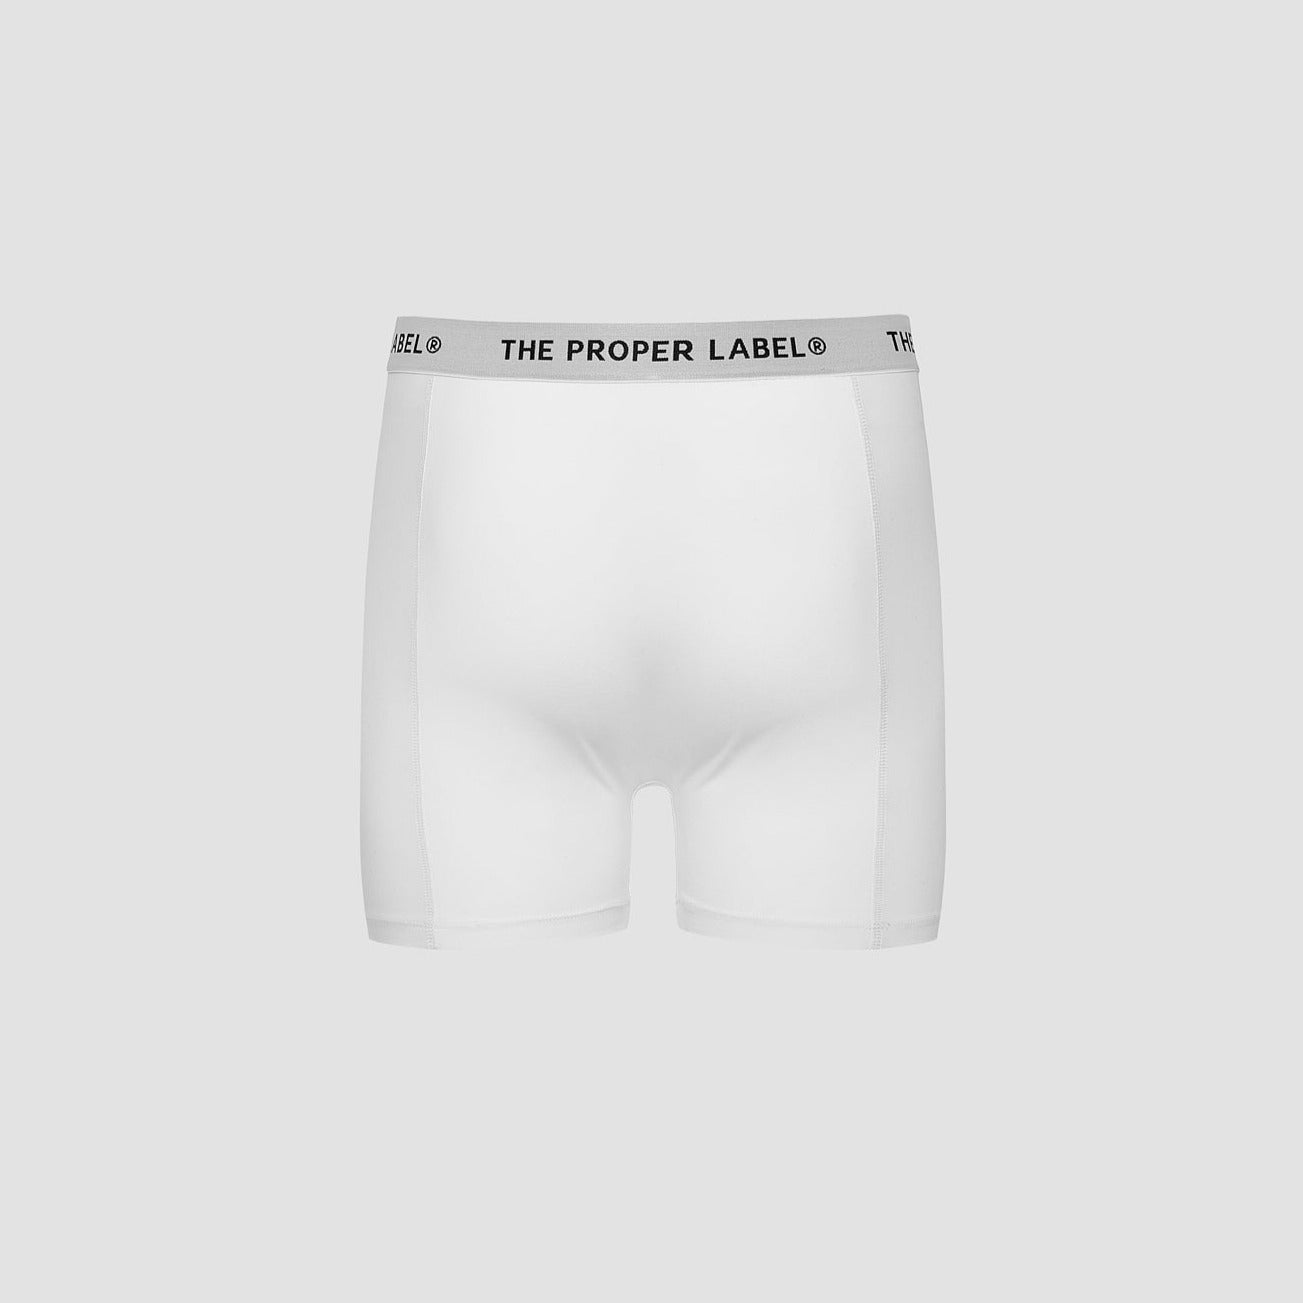 The Proper Underwear ™ - The Proper Label ®